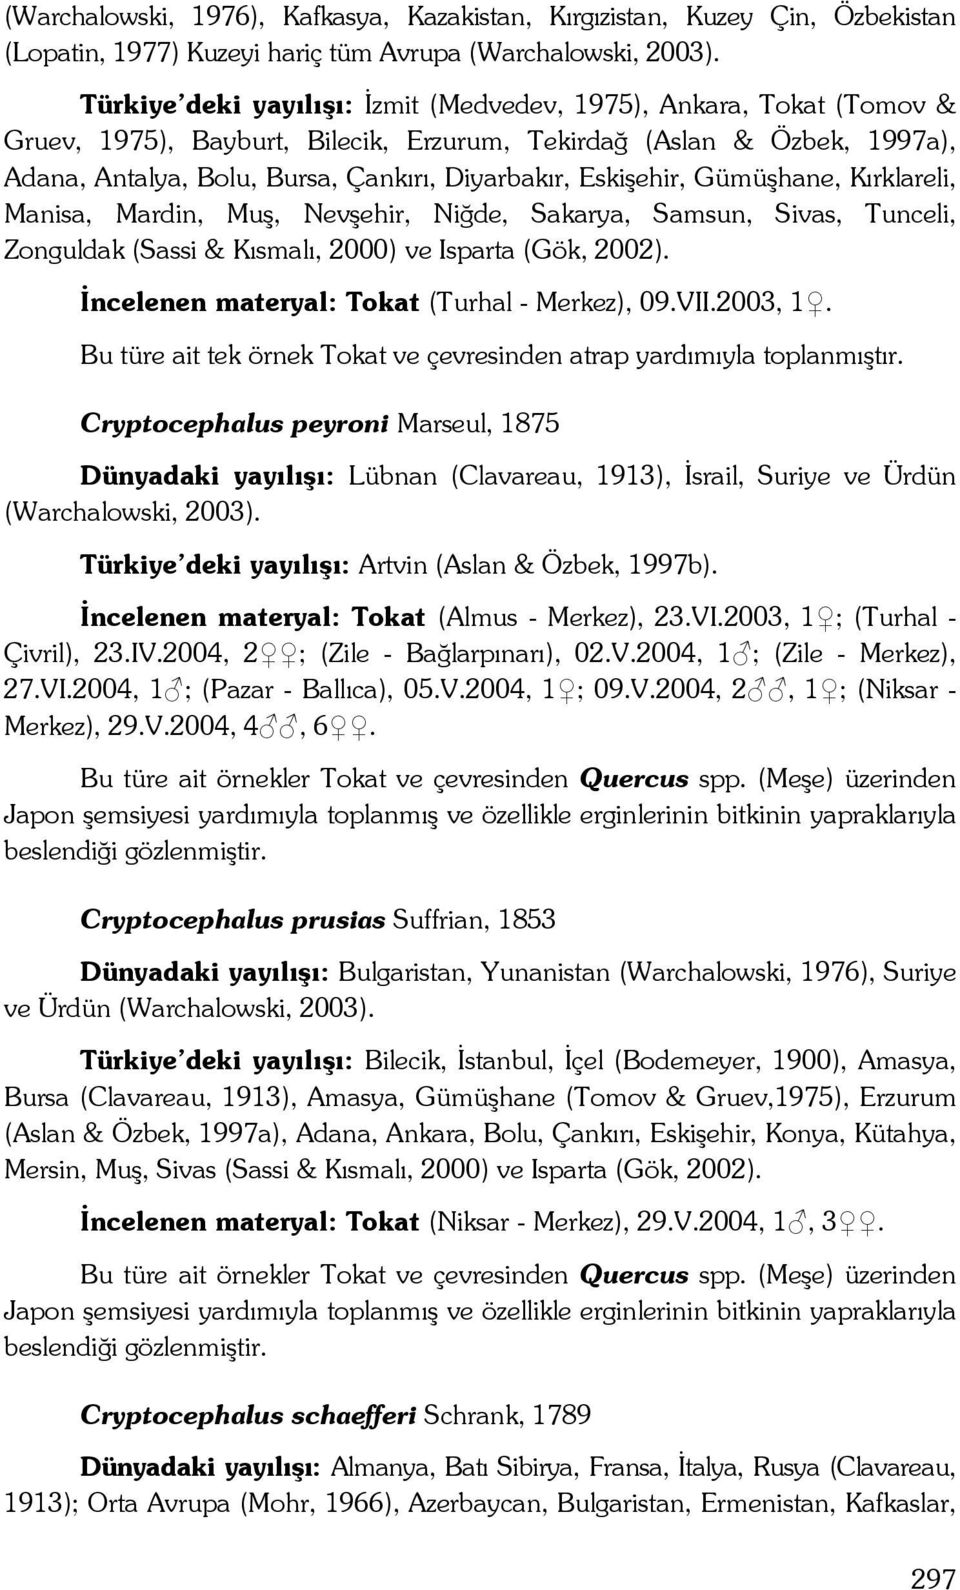 Eskişehir, Gümüşhane, Kırklareli, Manisa, Mardin, Muş, Nevşehir, Niğde, Sakarya, Samsun, Sivas, Tunceli, Zonguldak (Sassi & Kısmalı, 2000) ve Isparta (Gök, 2002).